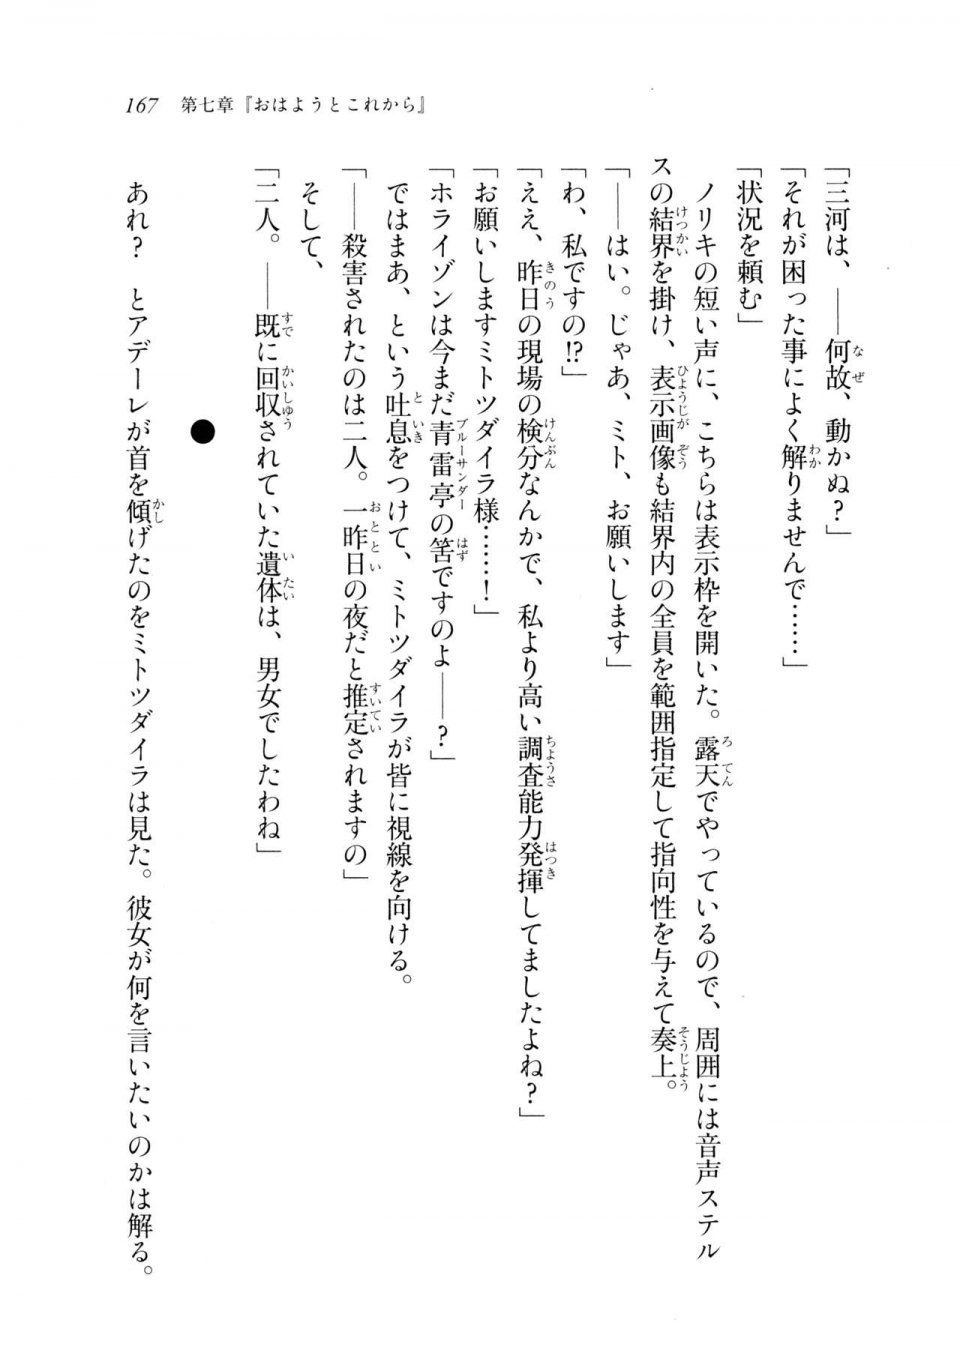 Kyoukai Senjou no Horizon LN Sidestory Vol 2 - Photo #165